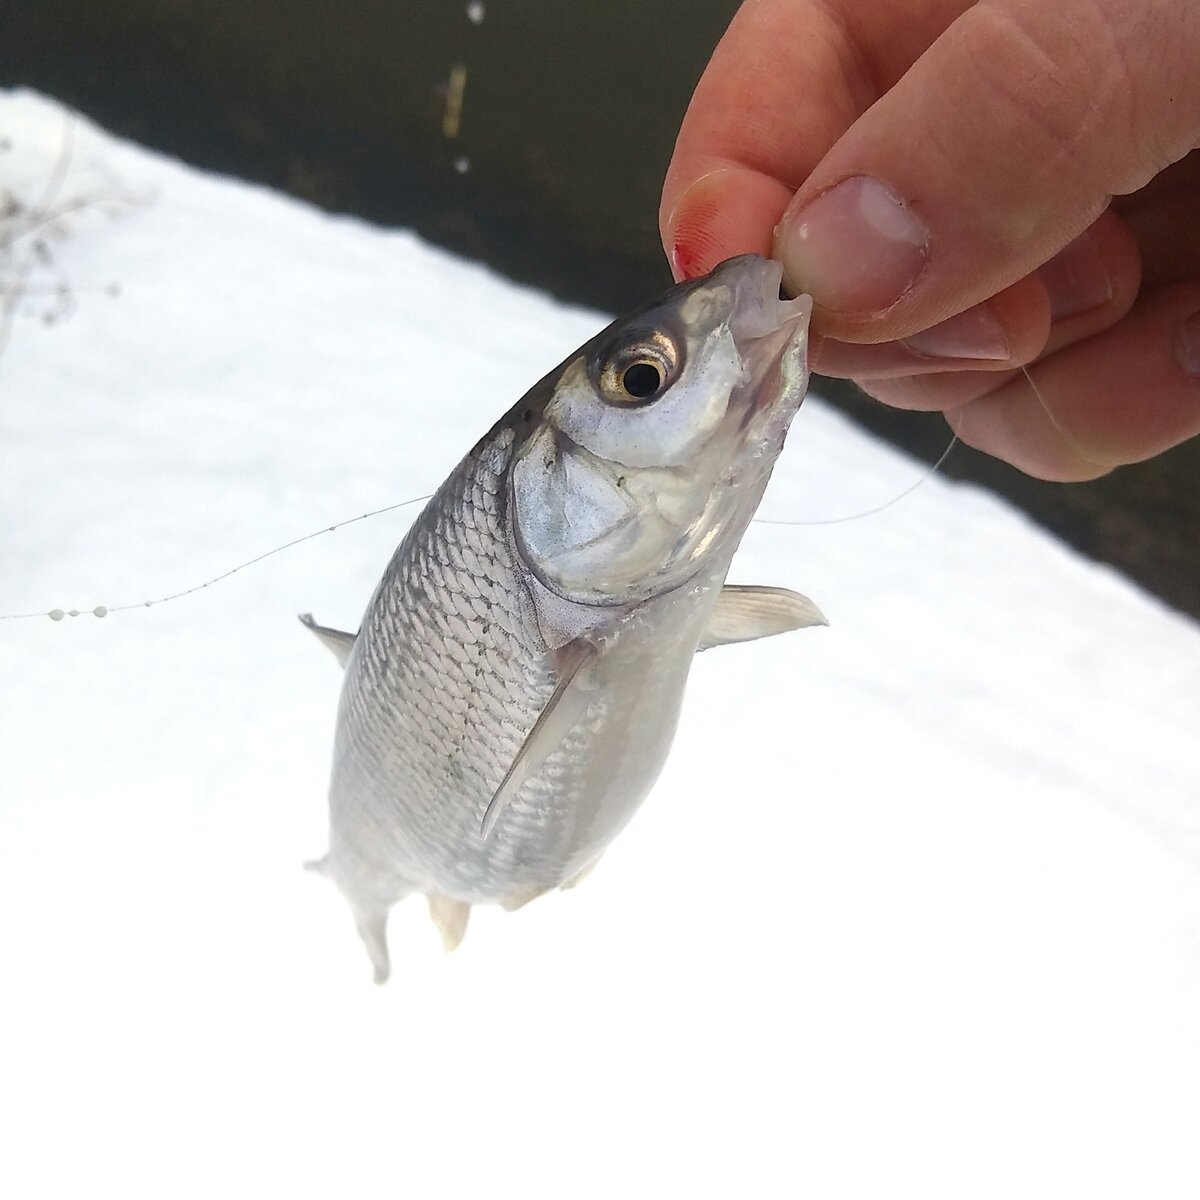  Голавль и плотва: различия и особенности рыболовного промысла 